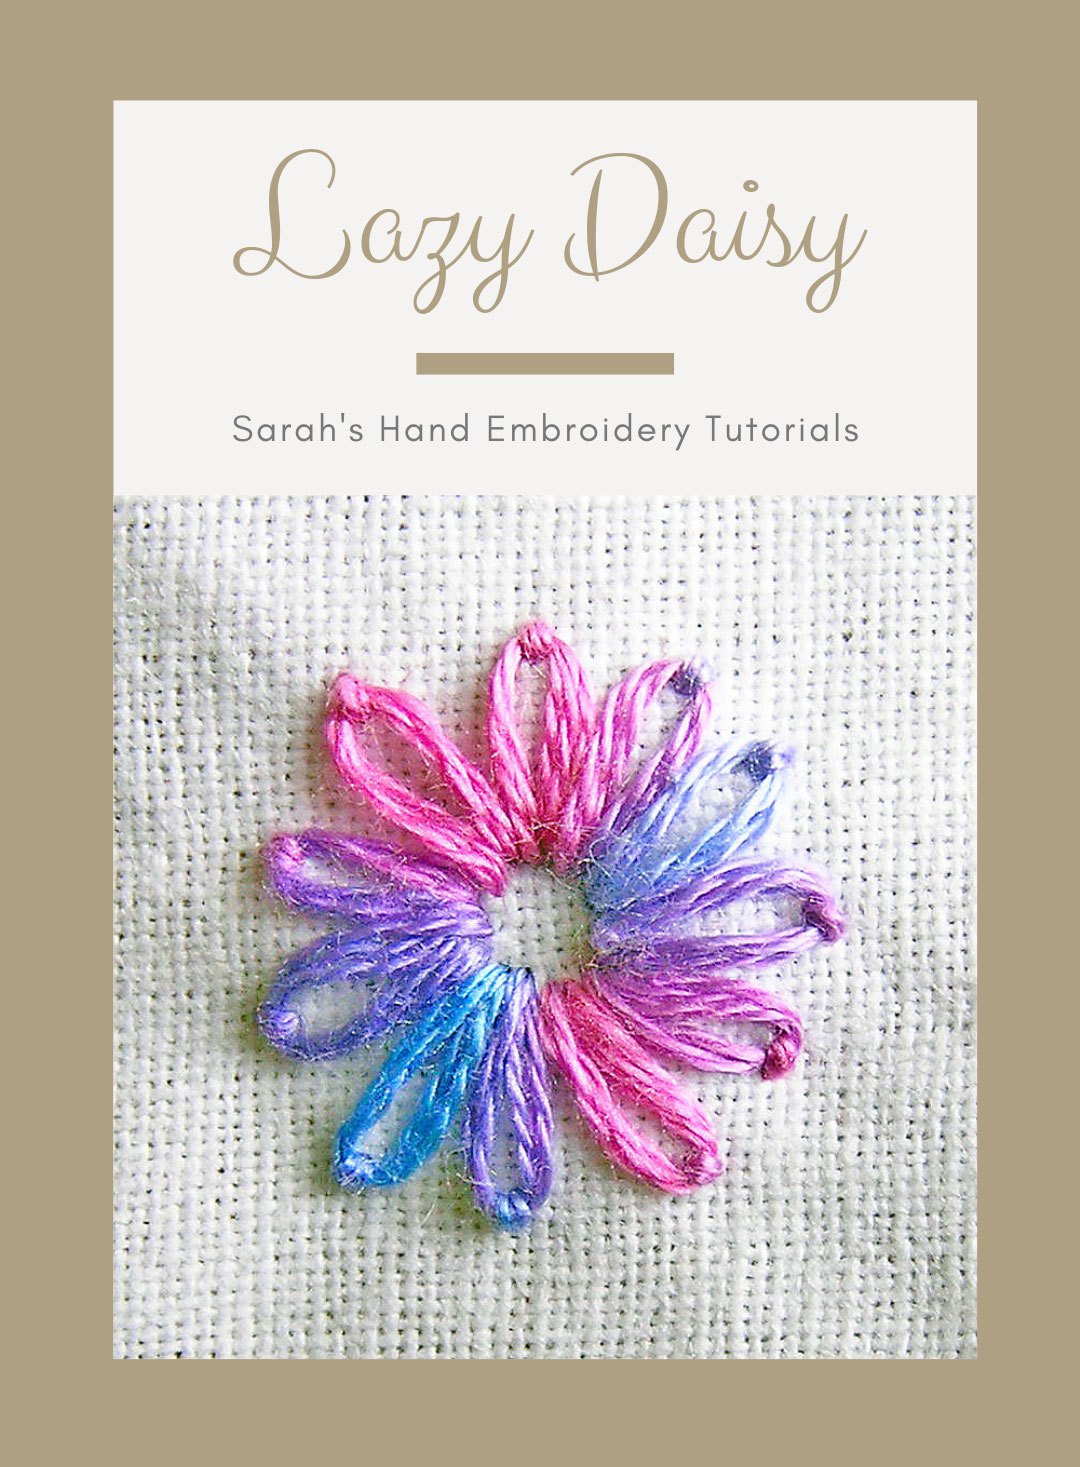 Lazy Daisy Sarah S Hand Embroidery Tutorials